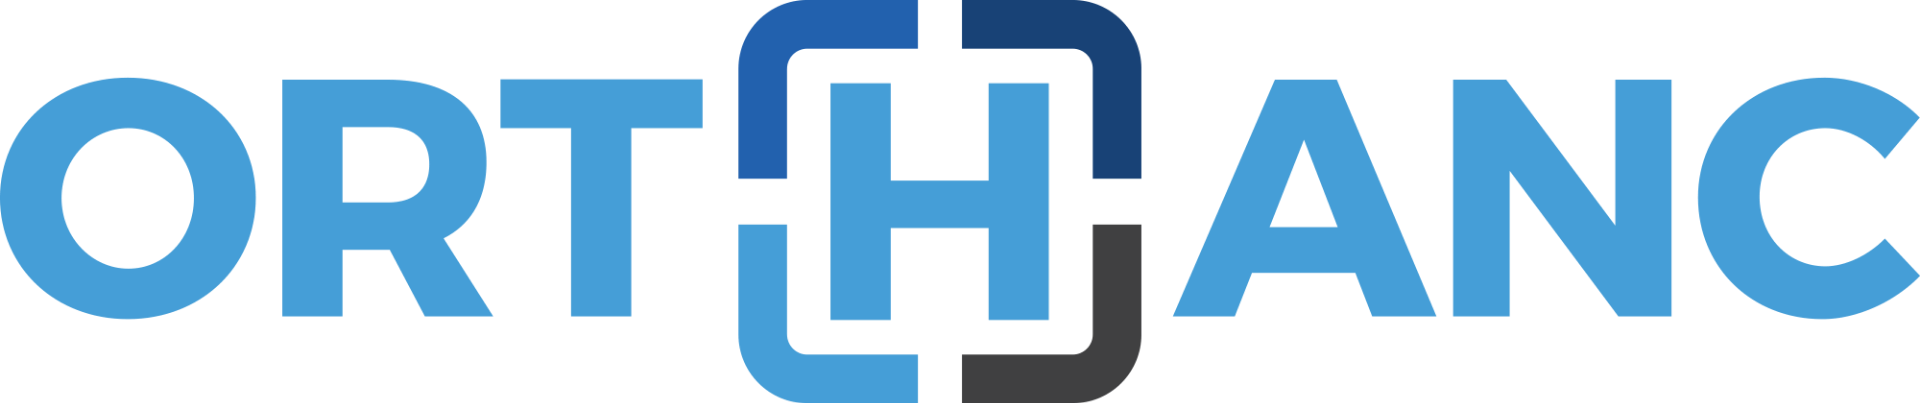 orthanc-logo.png